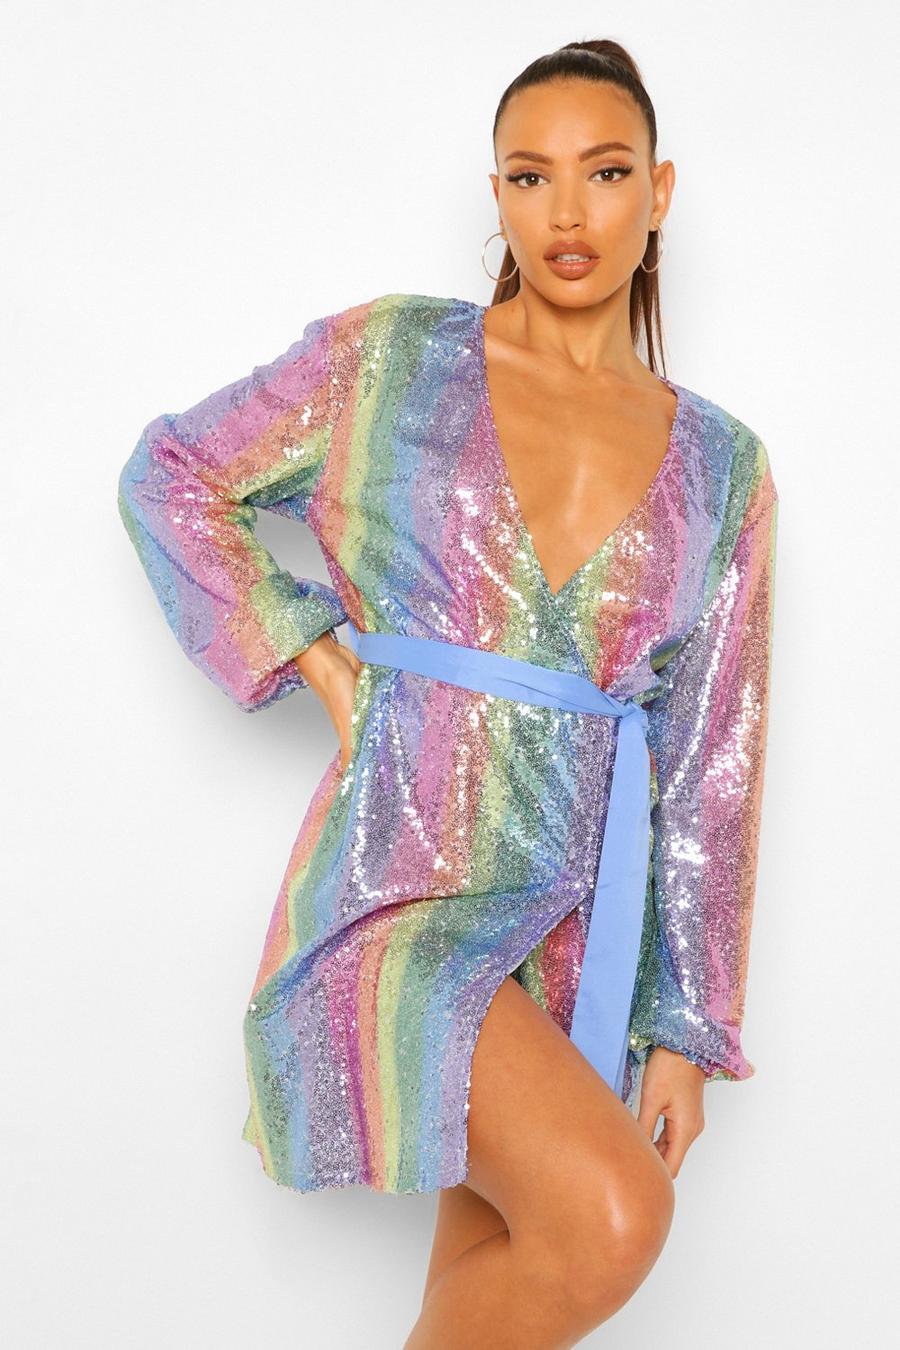 https://media.boohoo.com/i/boohoo/tzz91707_multi_xl/female-multi-tall-rainbow-striped-sequin-wrap-belted-mini-dress/?w=900&qlt=default&fmt.jp2.qlt=70&fmt=auto&sm=fit